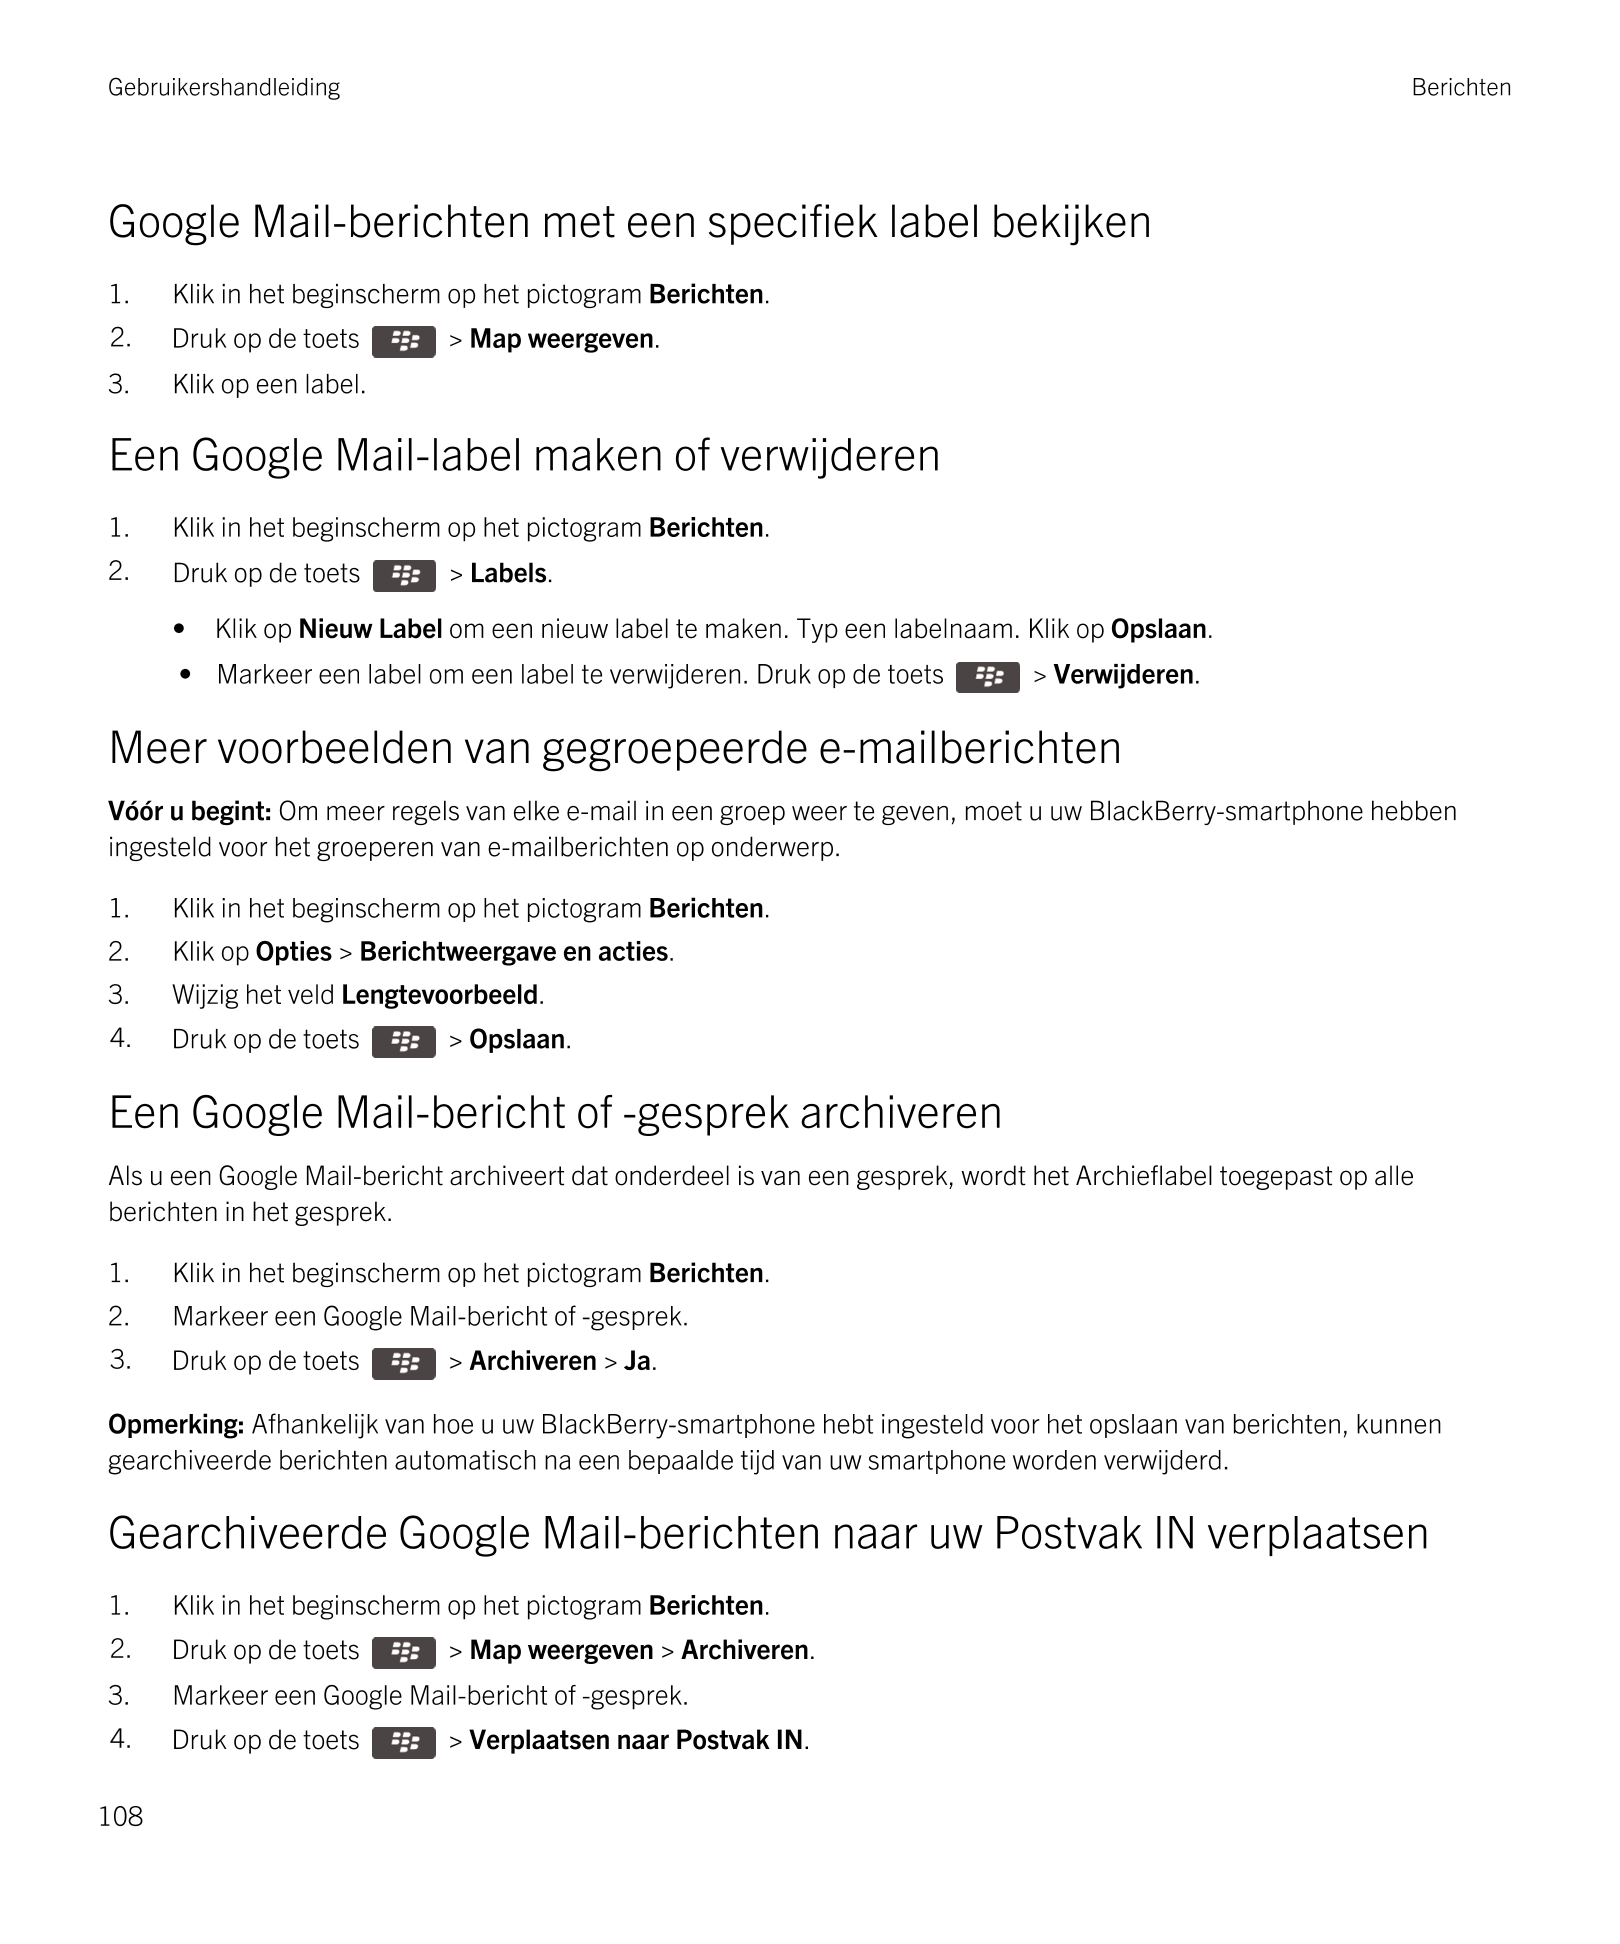 Gebruikershandleiding Berichten
Google Mail-berichten met een specifiek label bekijken
1. Klik in het beginscherm op het pictogr